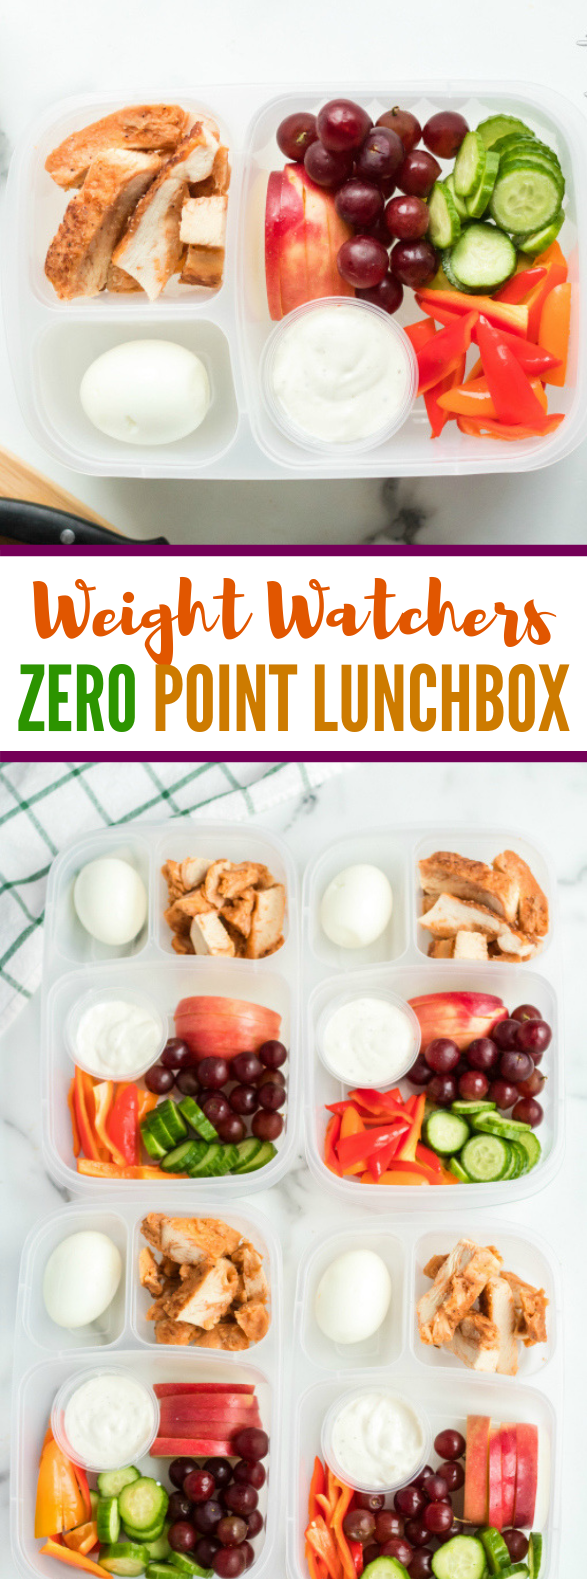 Weight Watchers Zero Point Lunchbox #healthylunch #diet